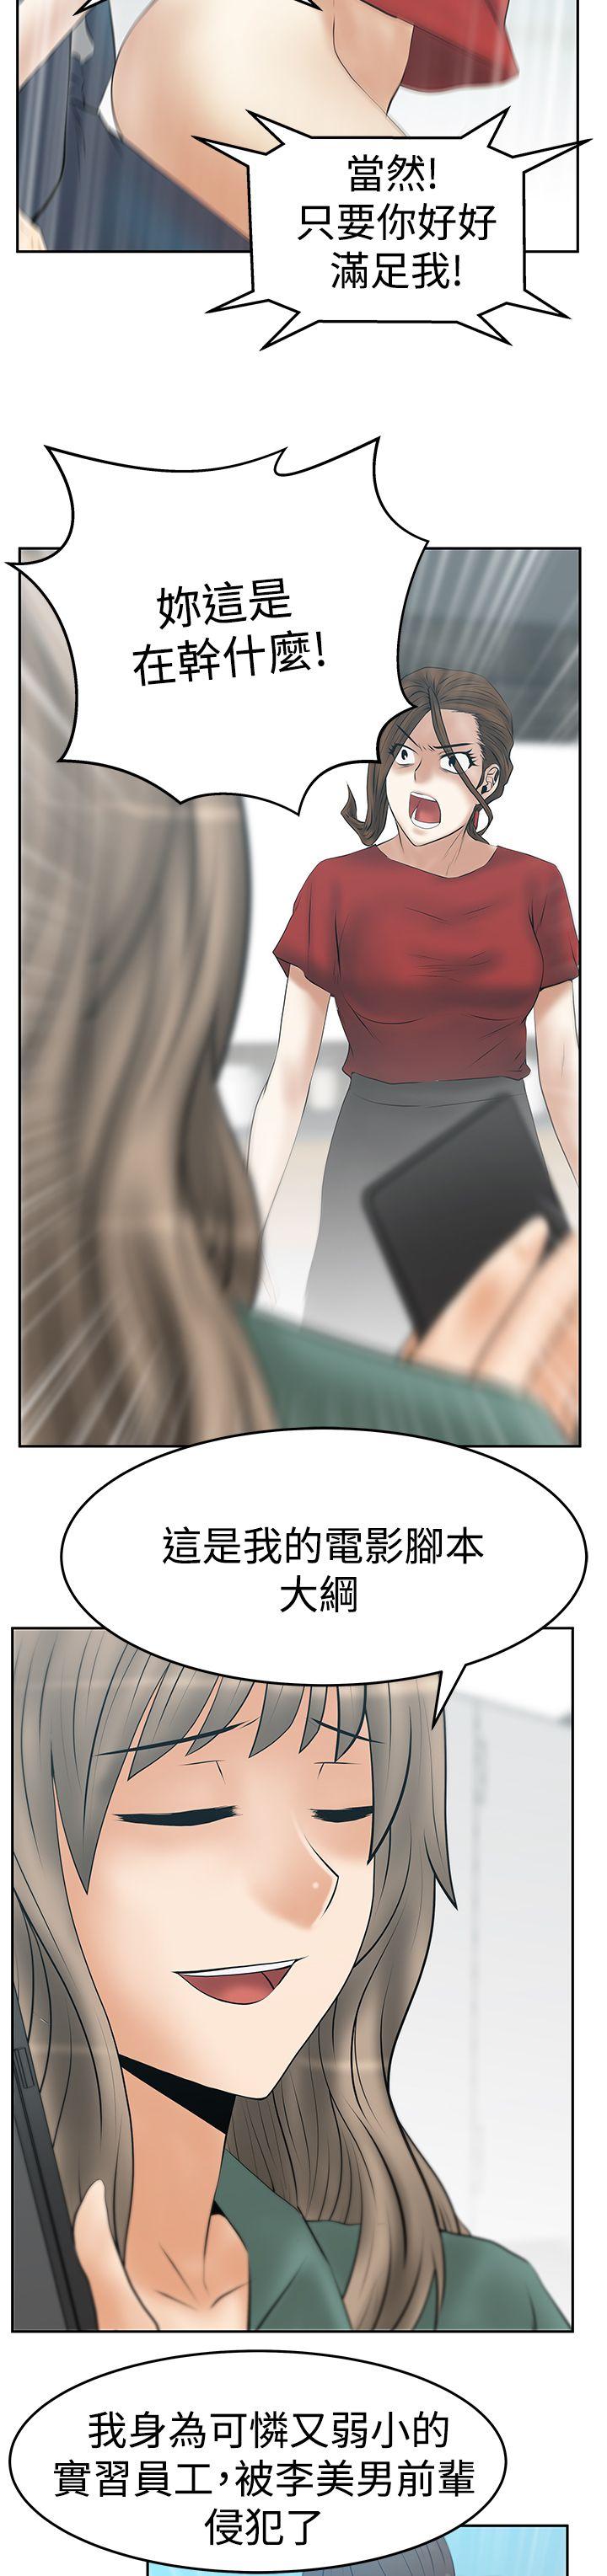 韩国污漫画 MY OFFICE LADYS 第3季-第33话 15